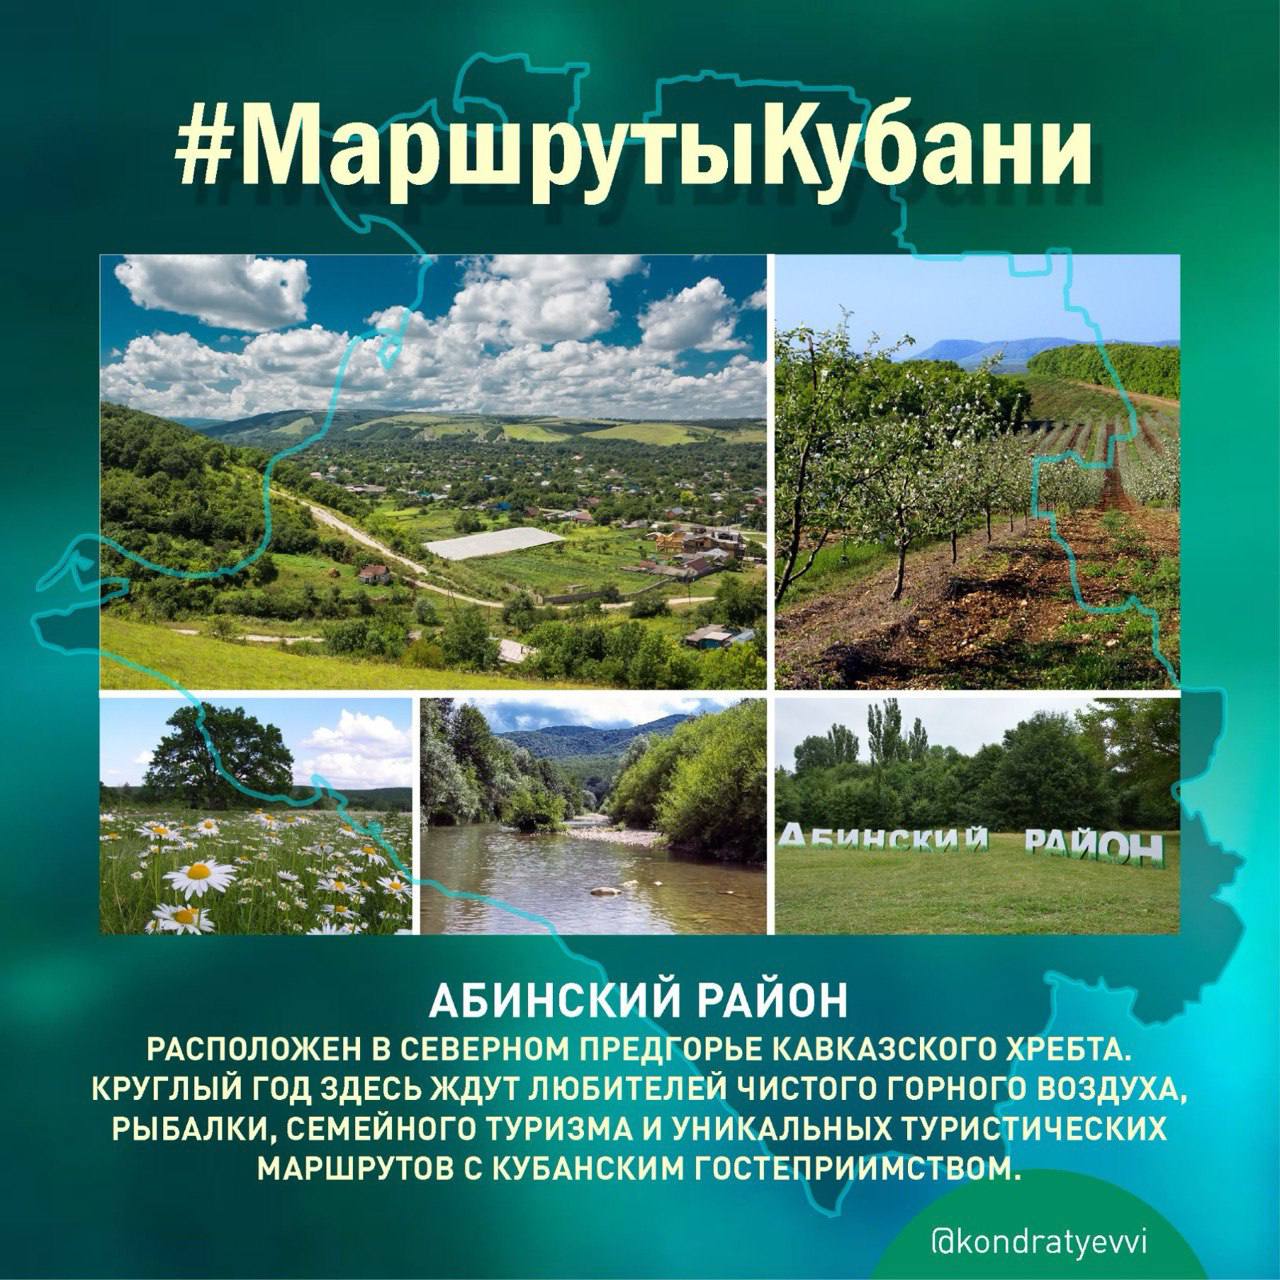 Вениамин Кондратьев рассказал об уникальных туристических местах Абинского района